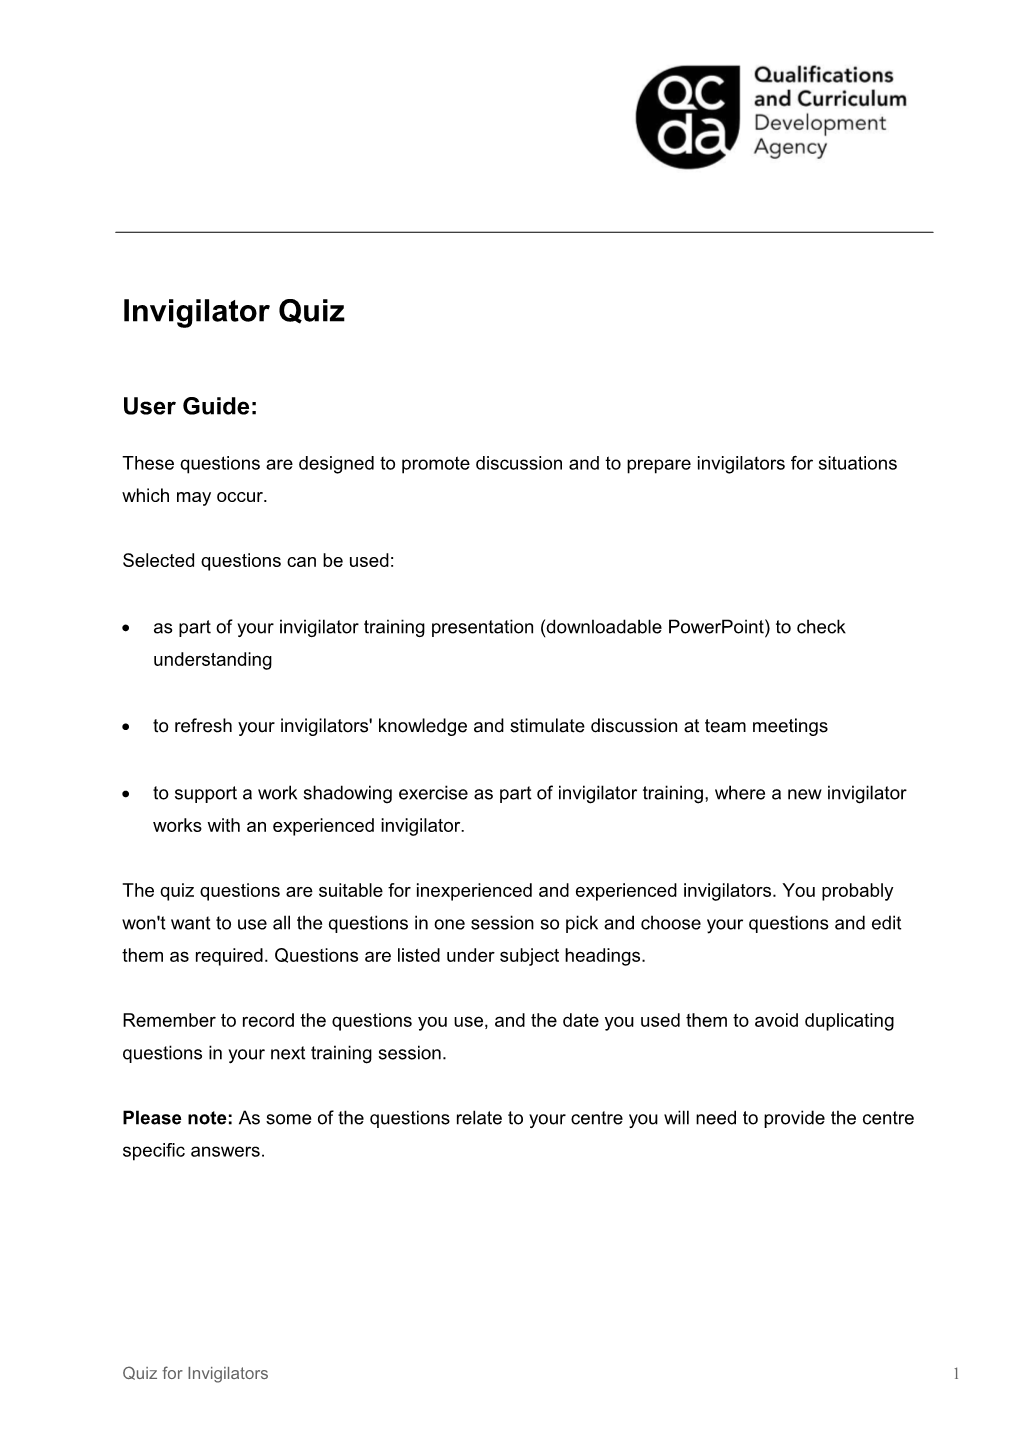 Invigilator Quiz User Guide